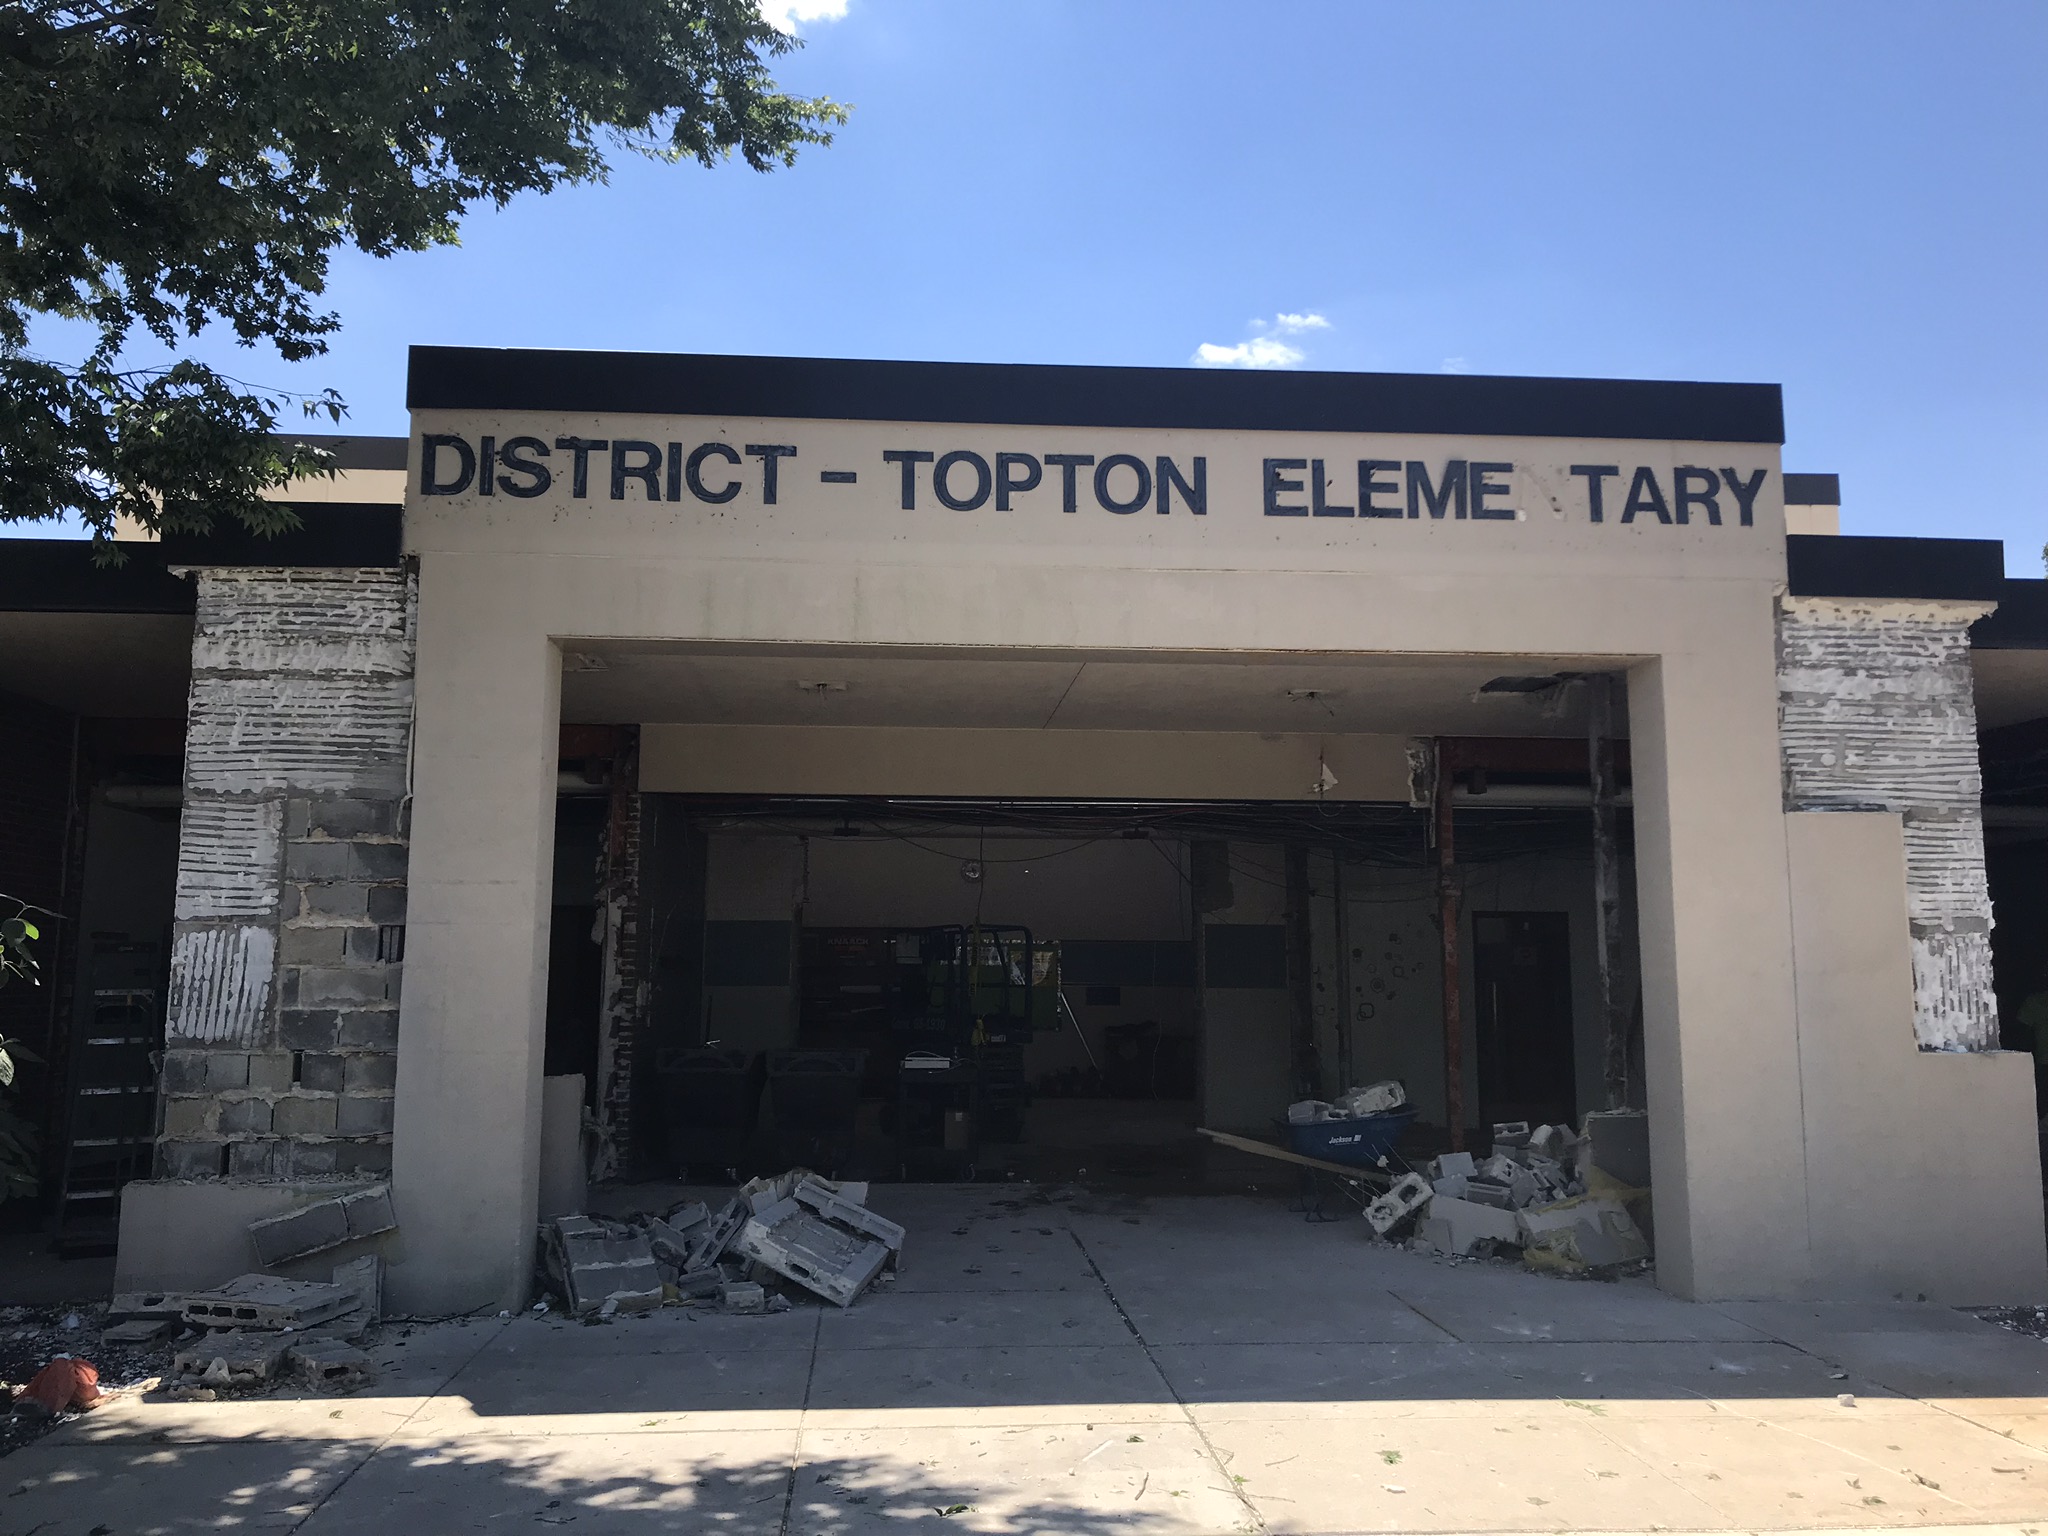 Old elementary entrance - demolition